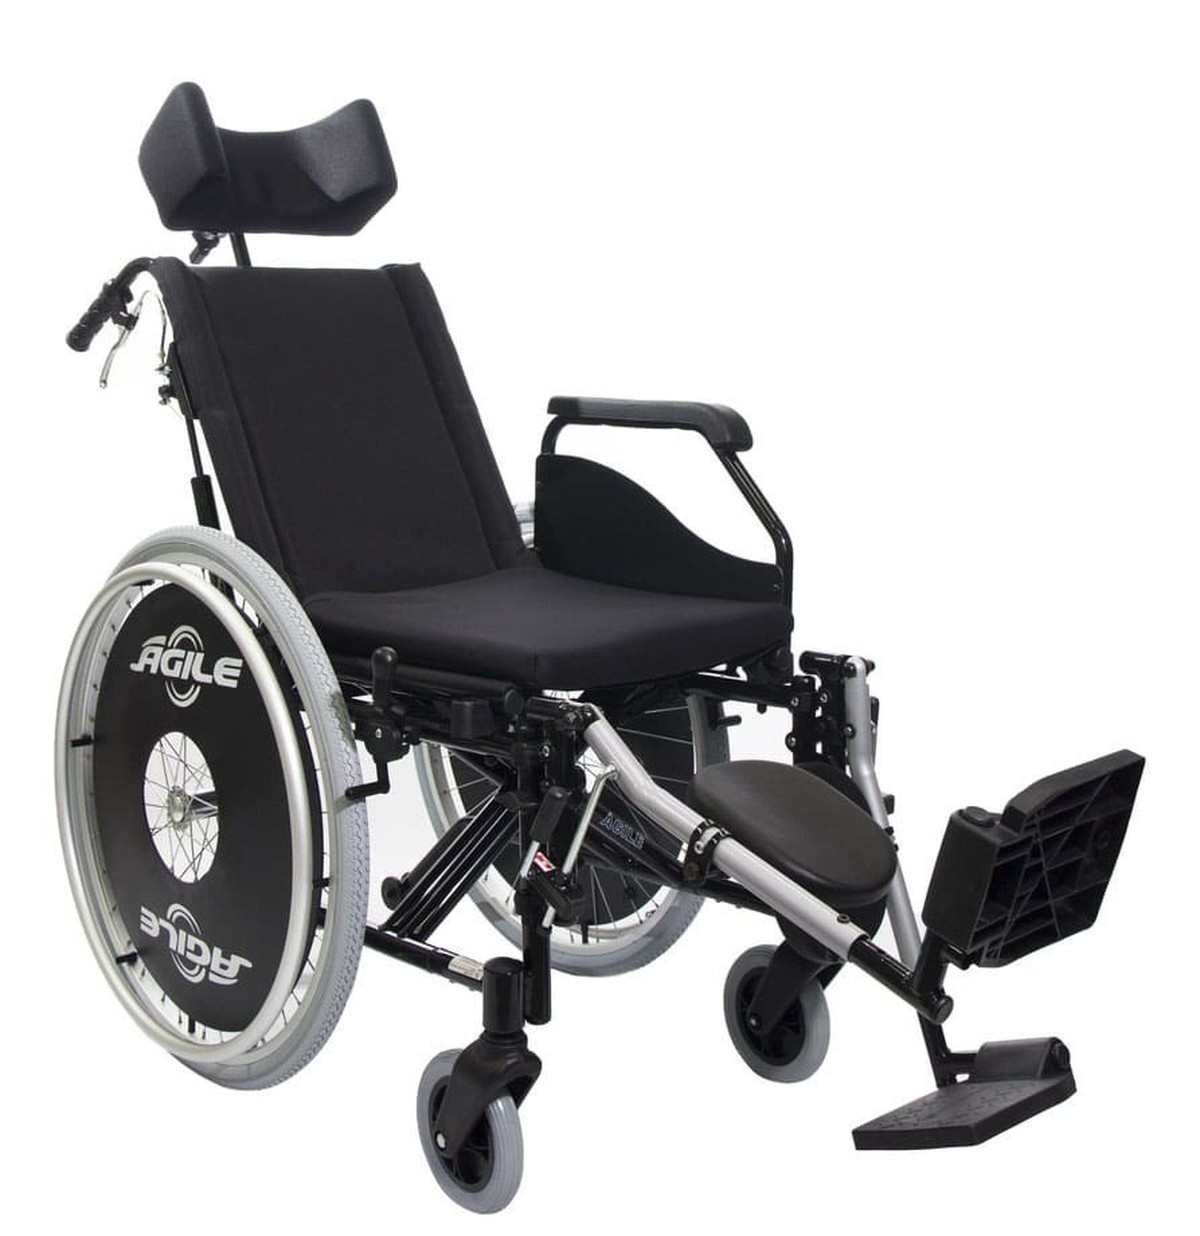 Foto do produto Cadeira de Rodas Agile Reclinavel até 120kg